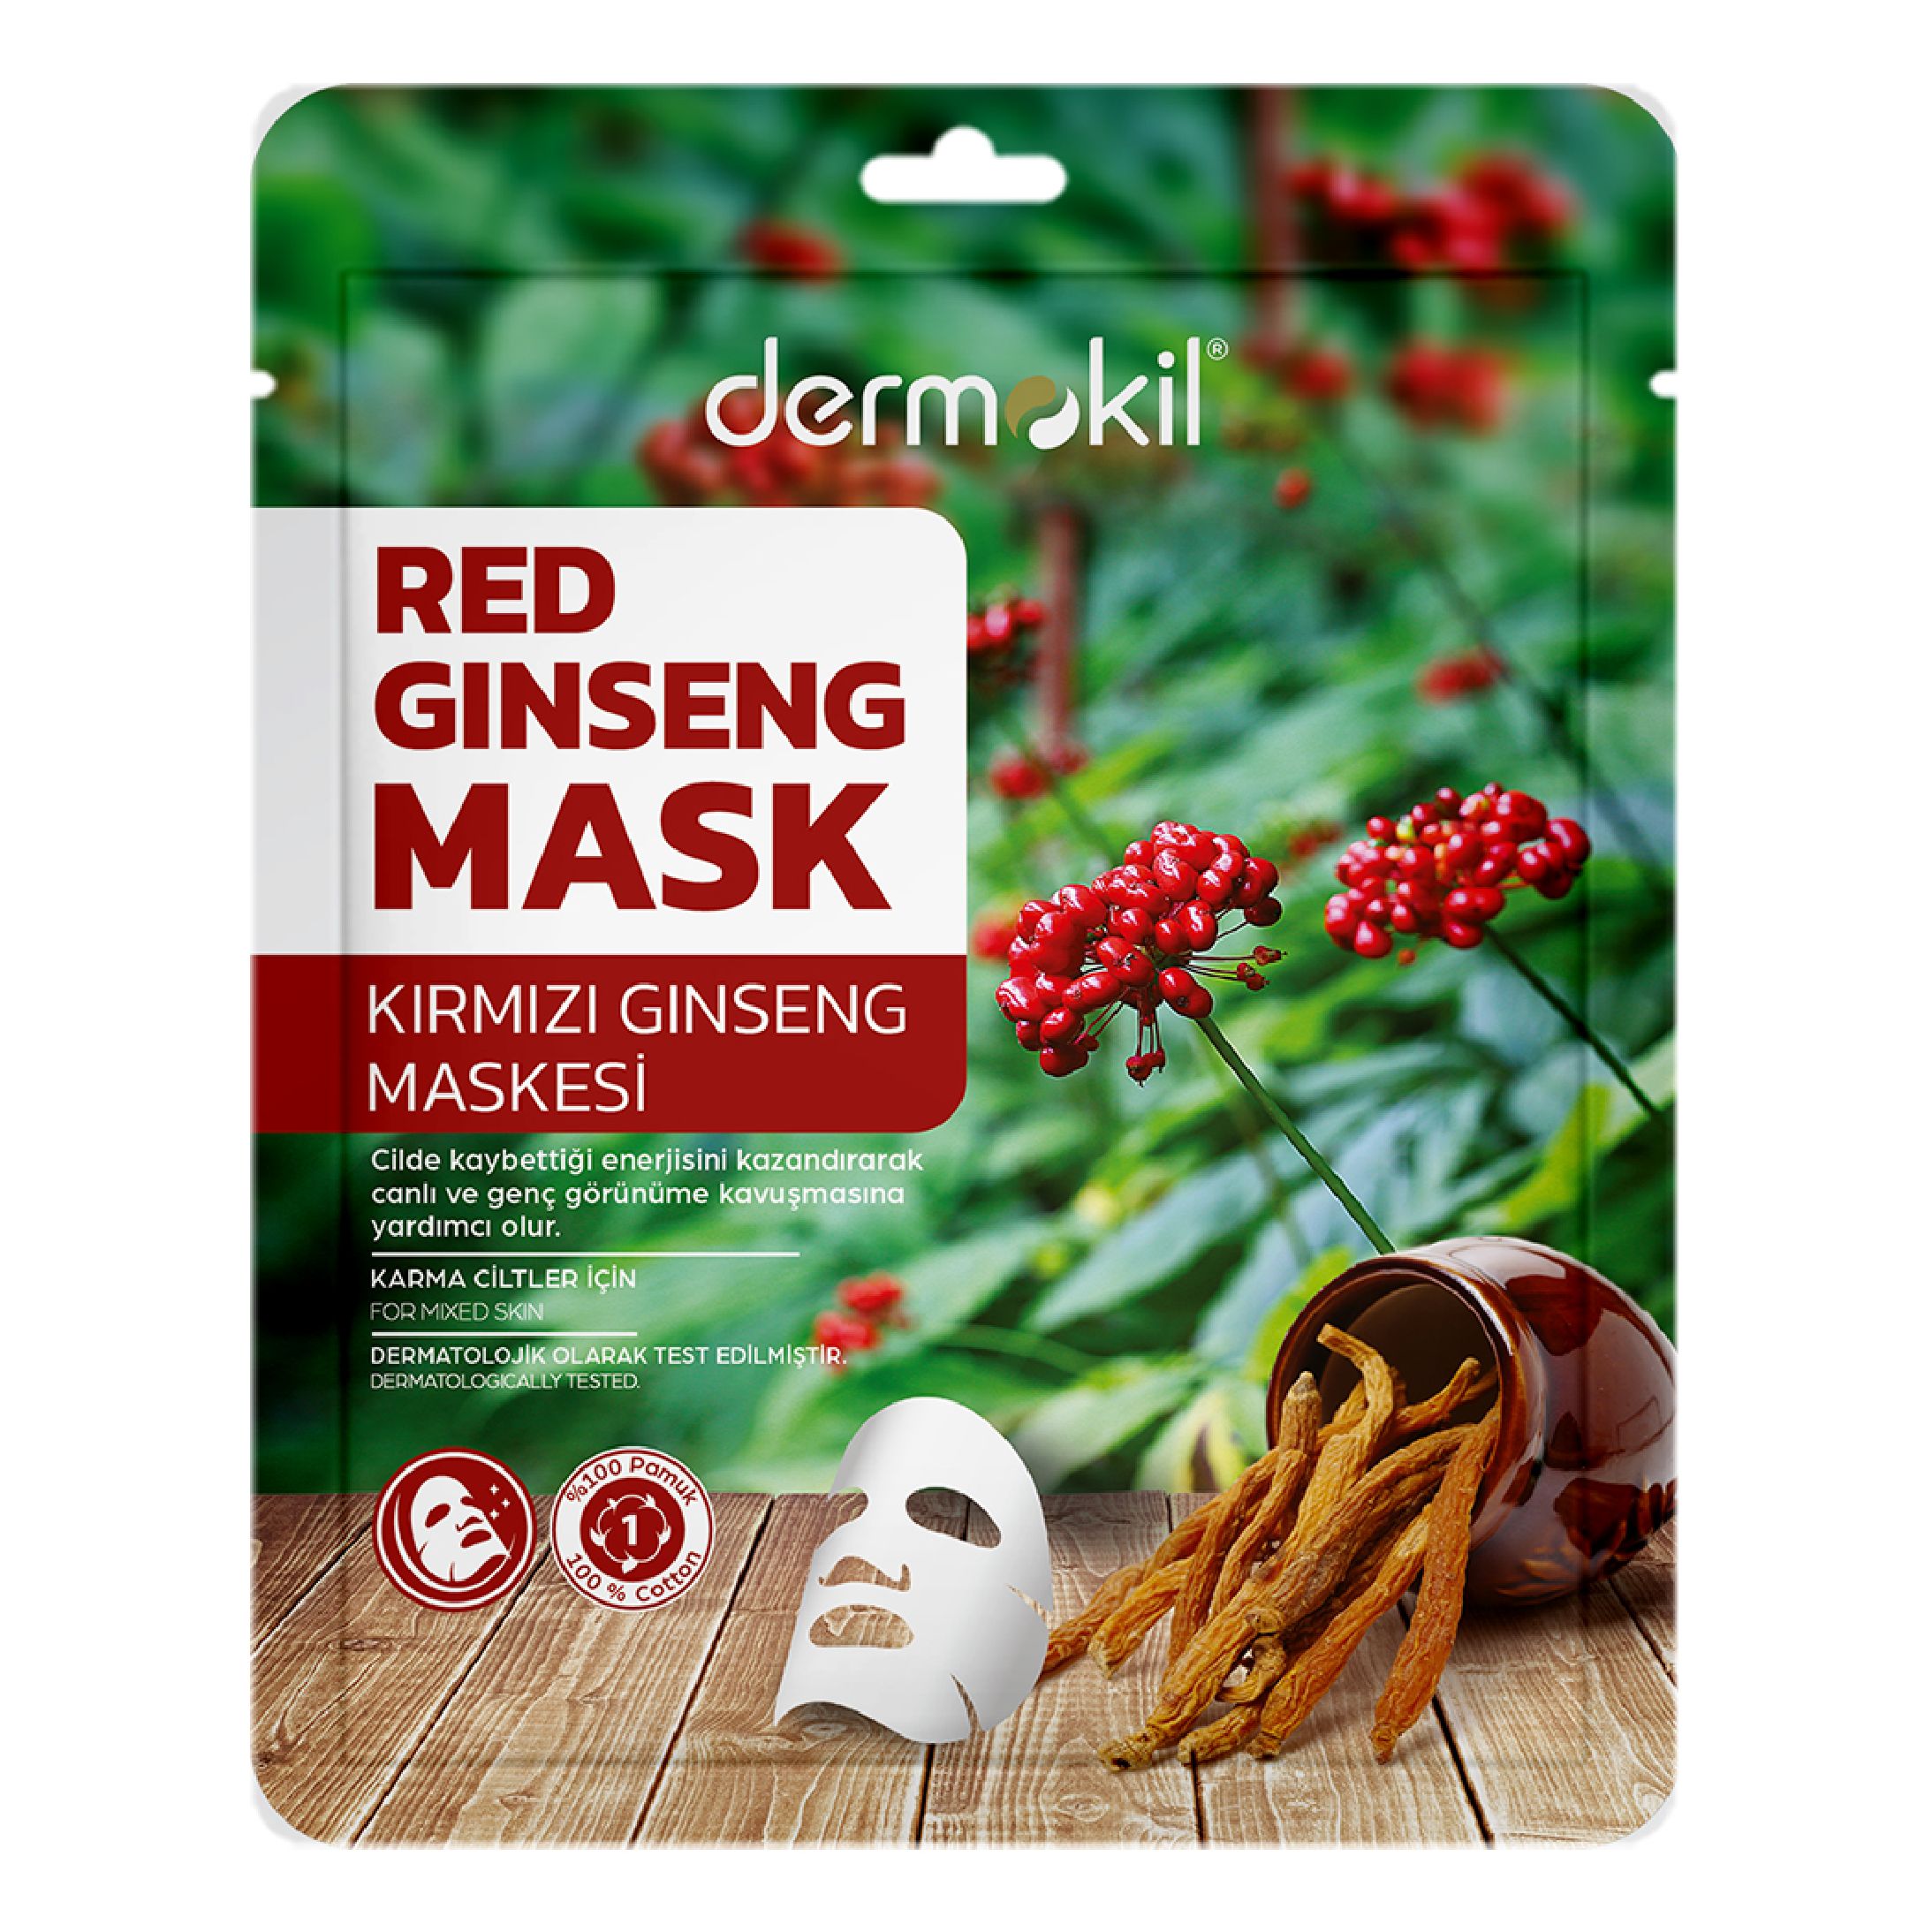  Kırmızı Ginseng Maske (Karma Ciltler için) 20 gr 